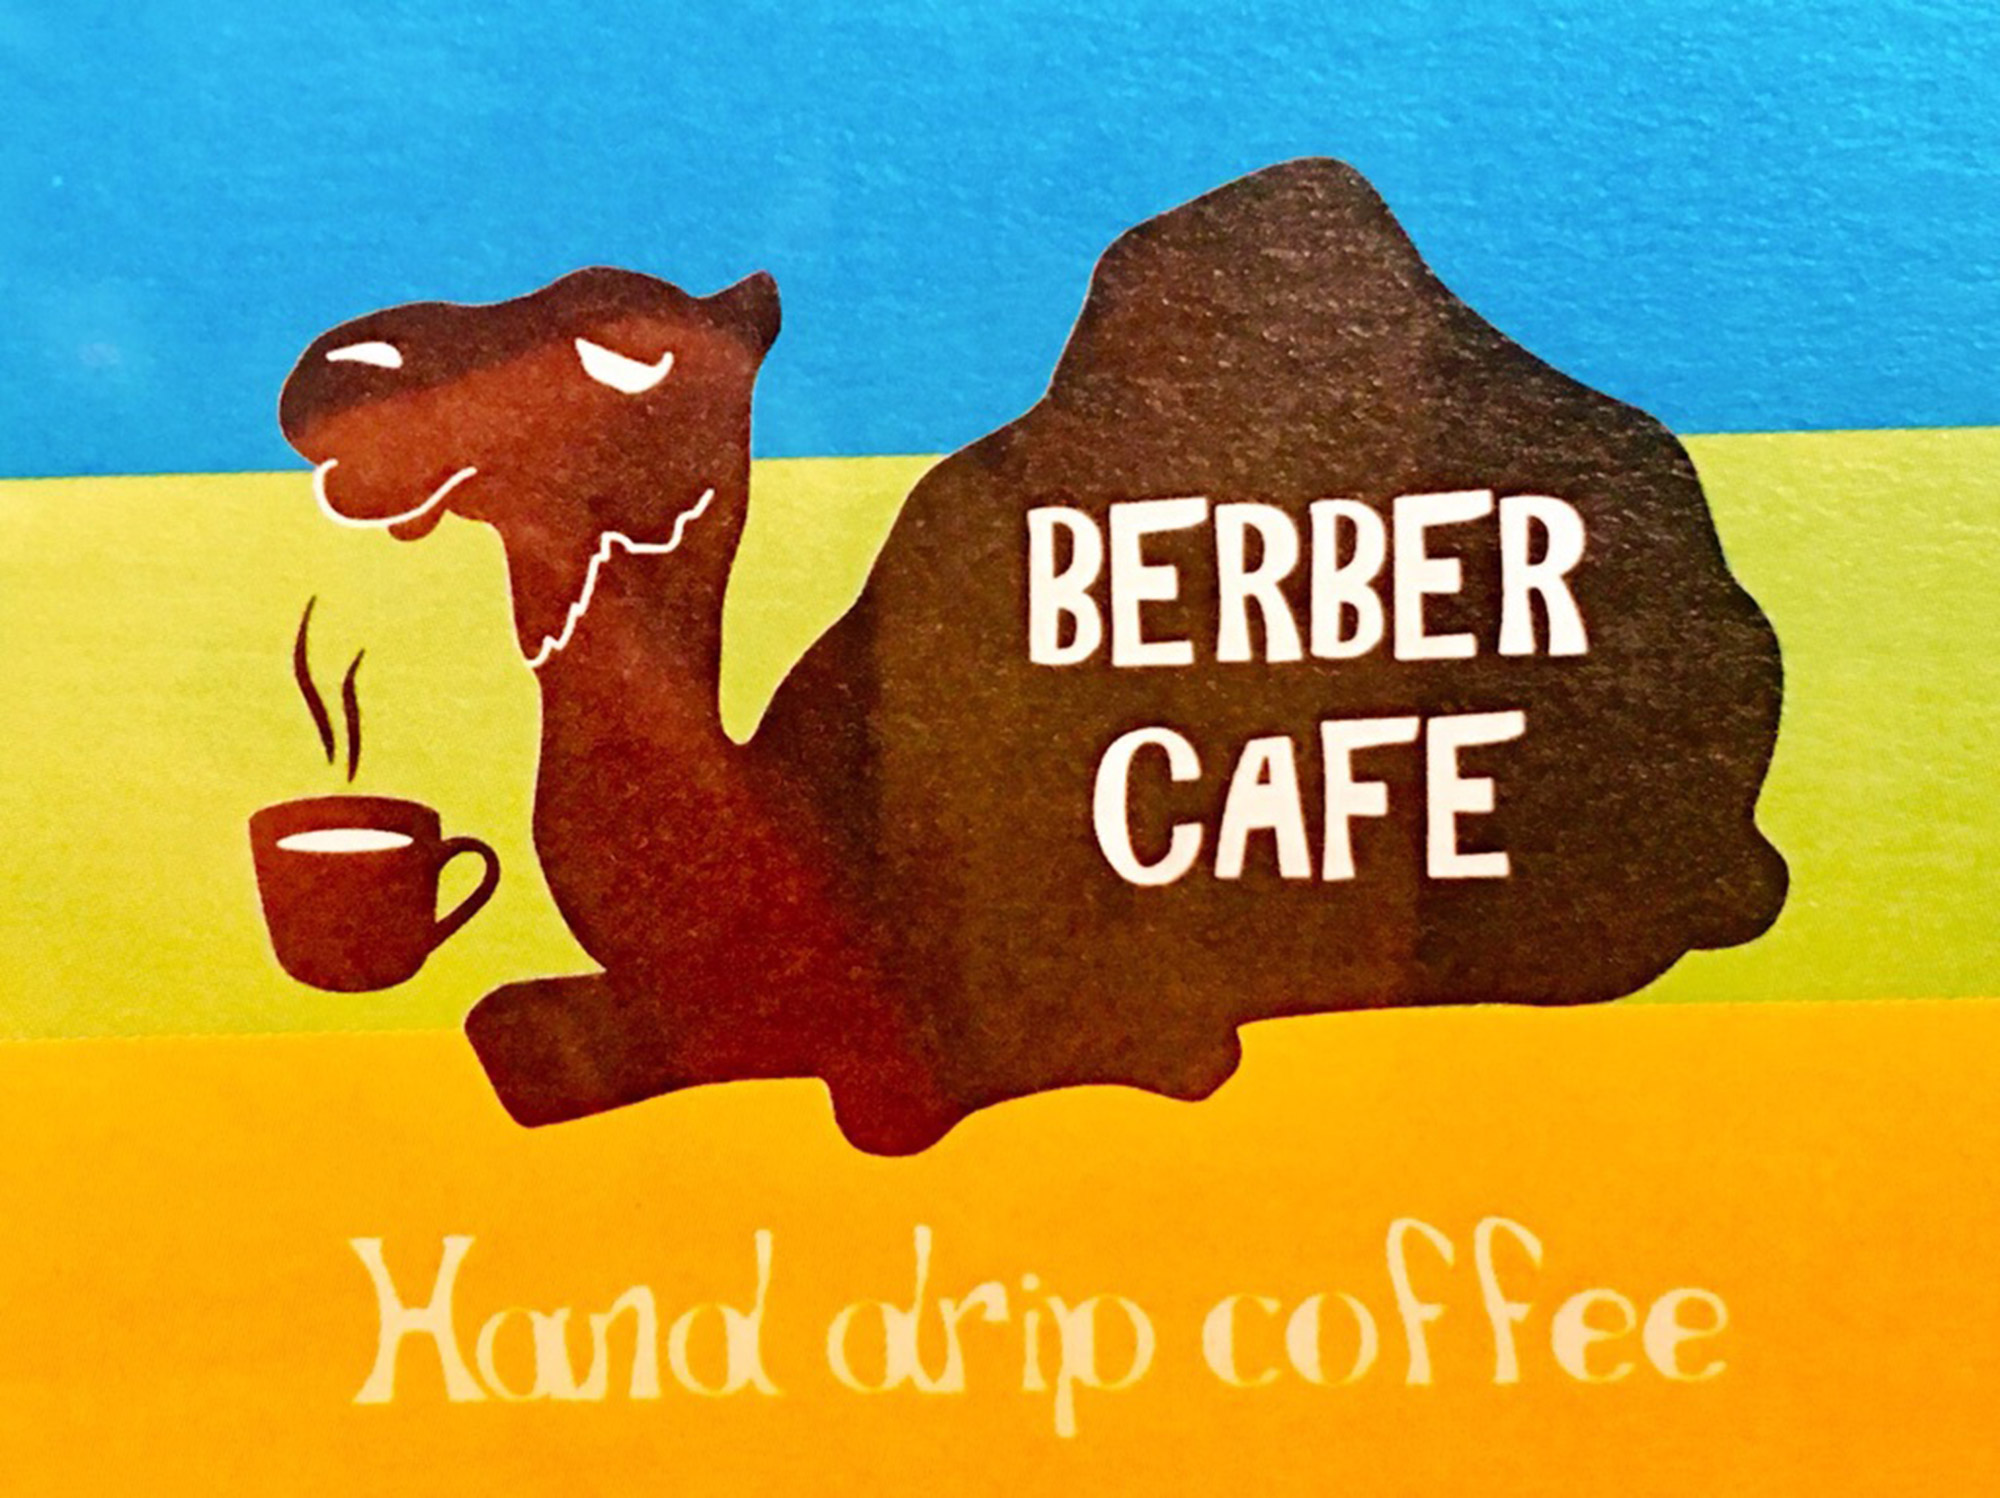 BERBER CAFE Signの写真